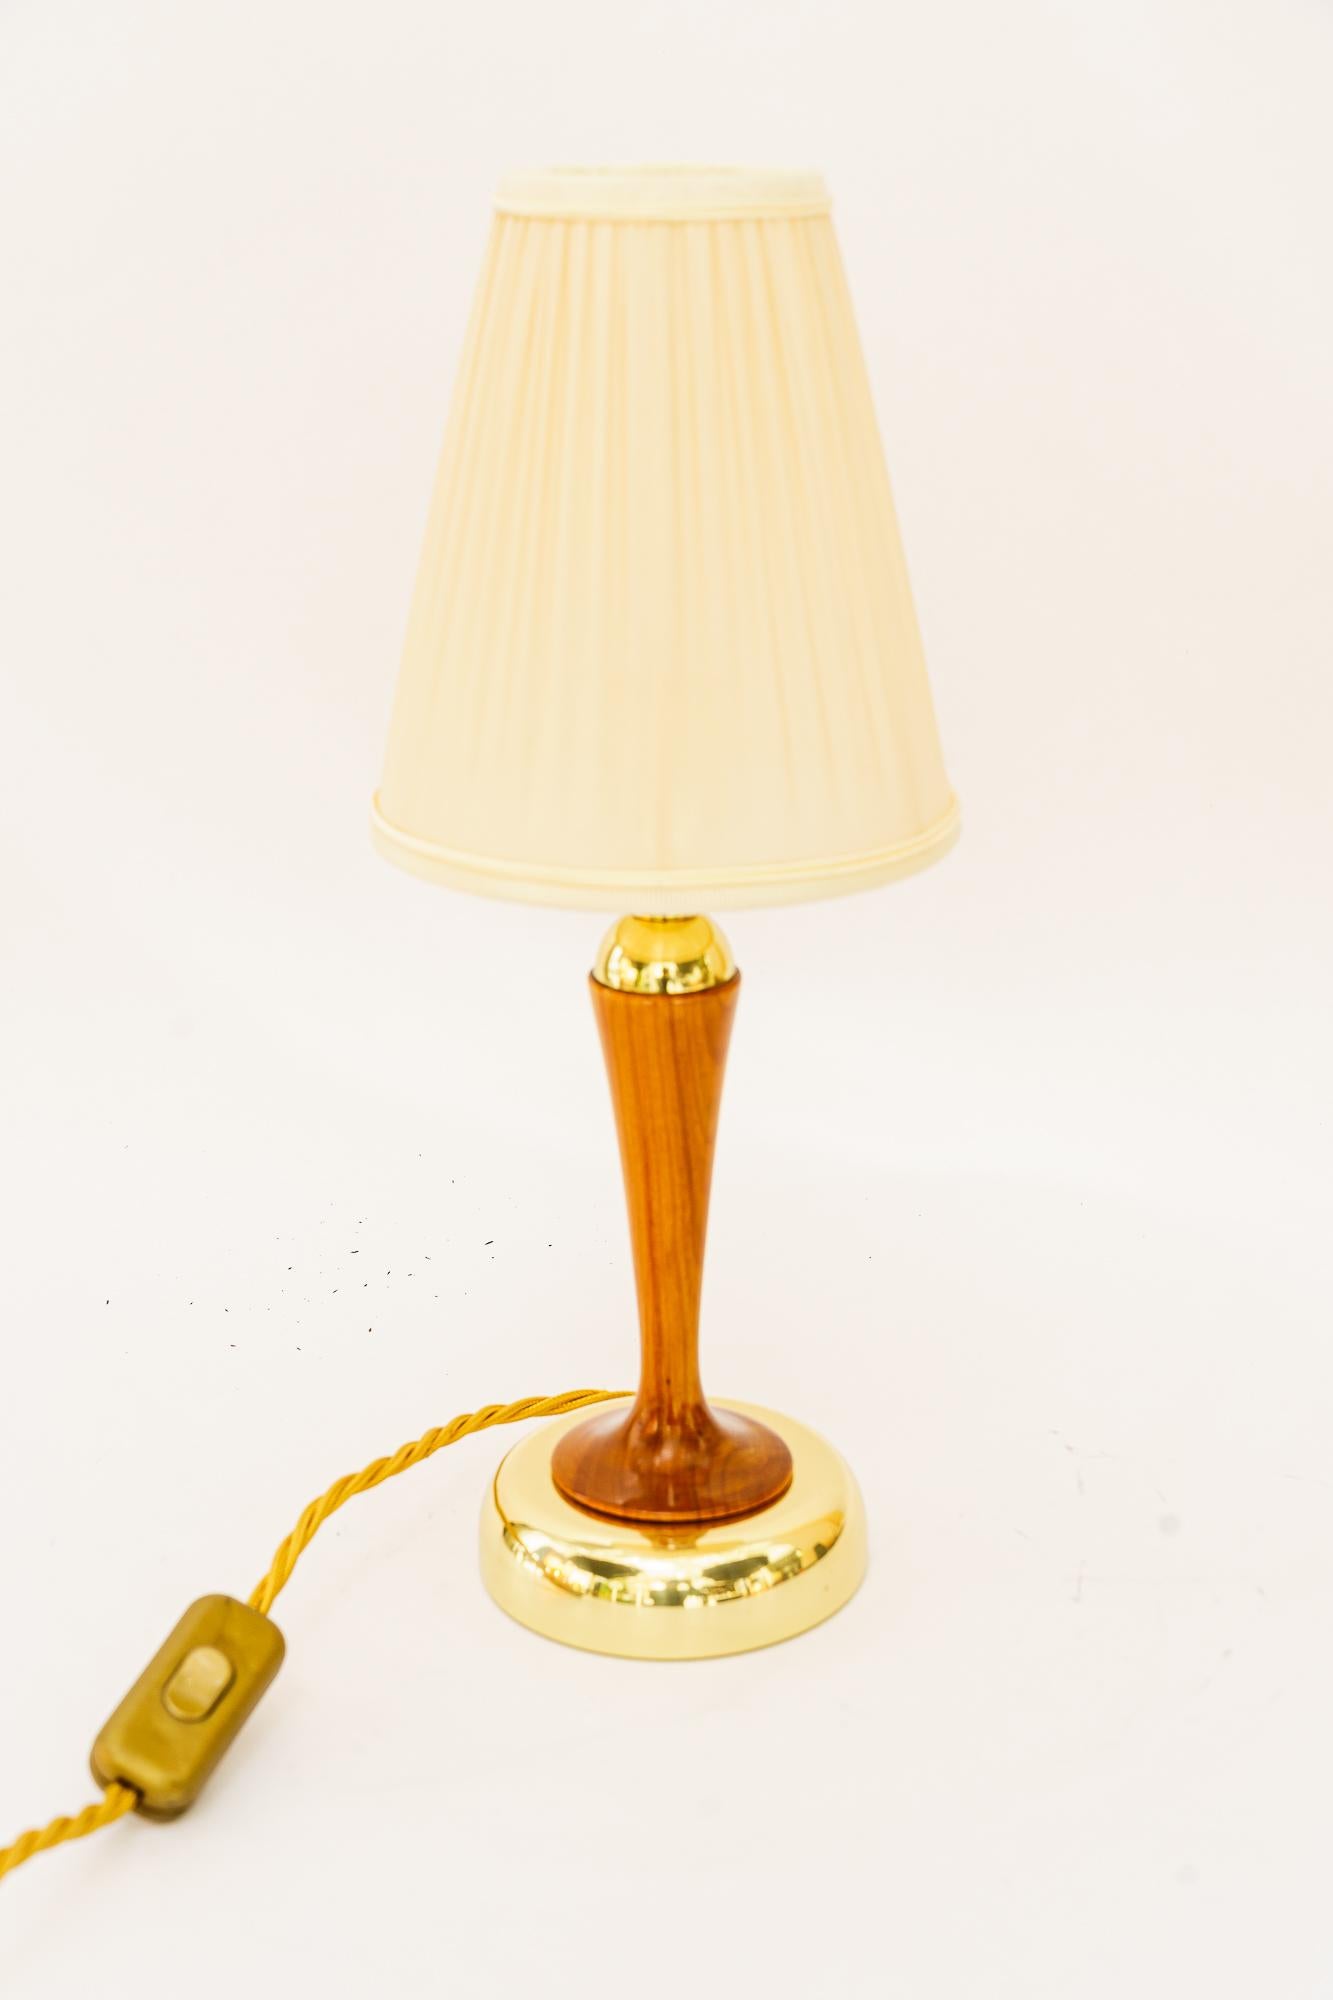 Rupert Nikoll Tischlampe mit Kirschholz und Stoffschirm wien um 1950er
Messing poliert und emailliert
Kirschenholz poliert 
Der Stoffschirm wird ersetzt (Neu)